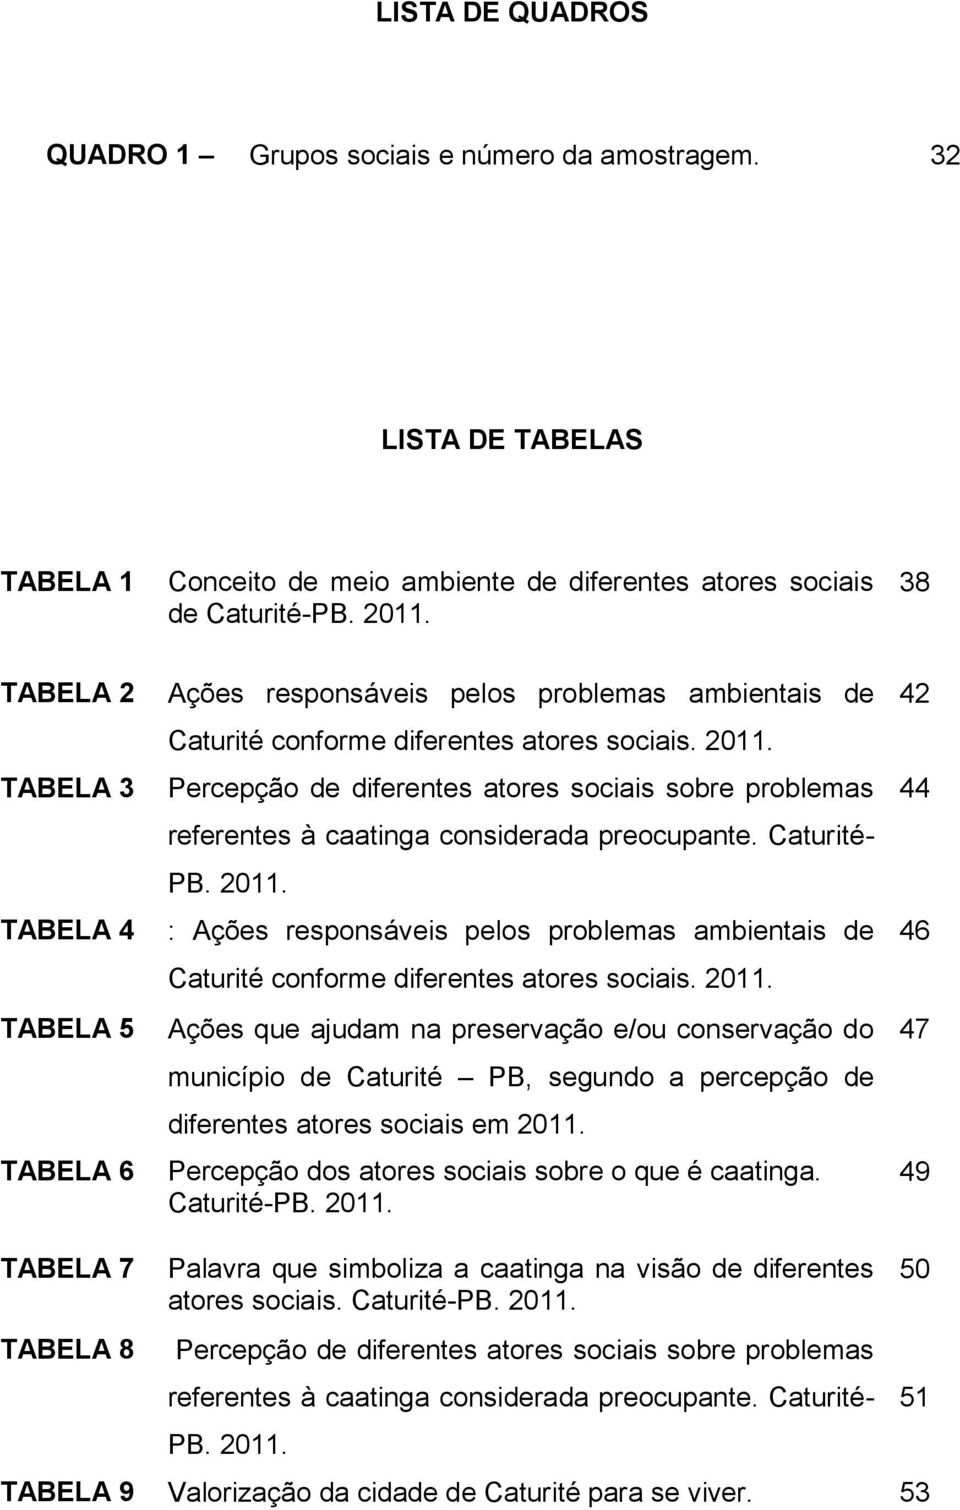 Percepção de diferentes atores sociais sobre problemas referentes à caatinga considerada preocupante. Caturité- PB. 2011.